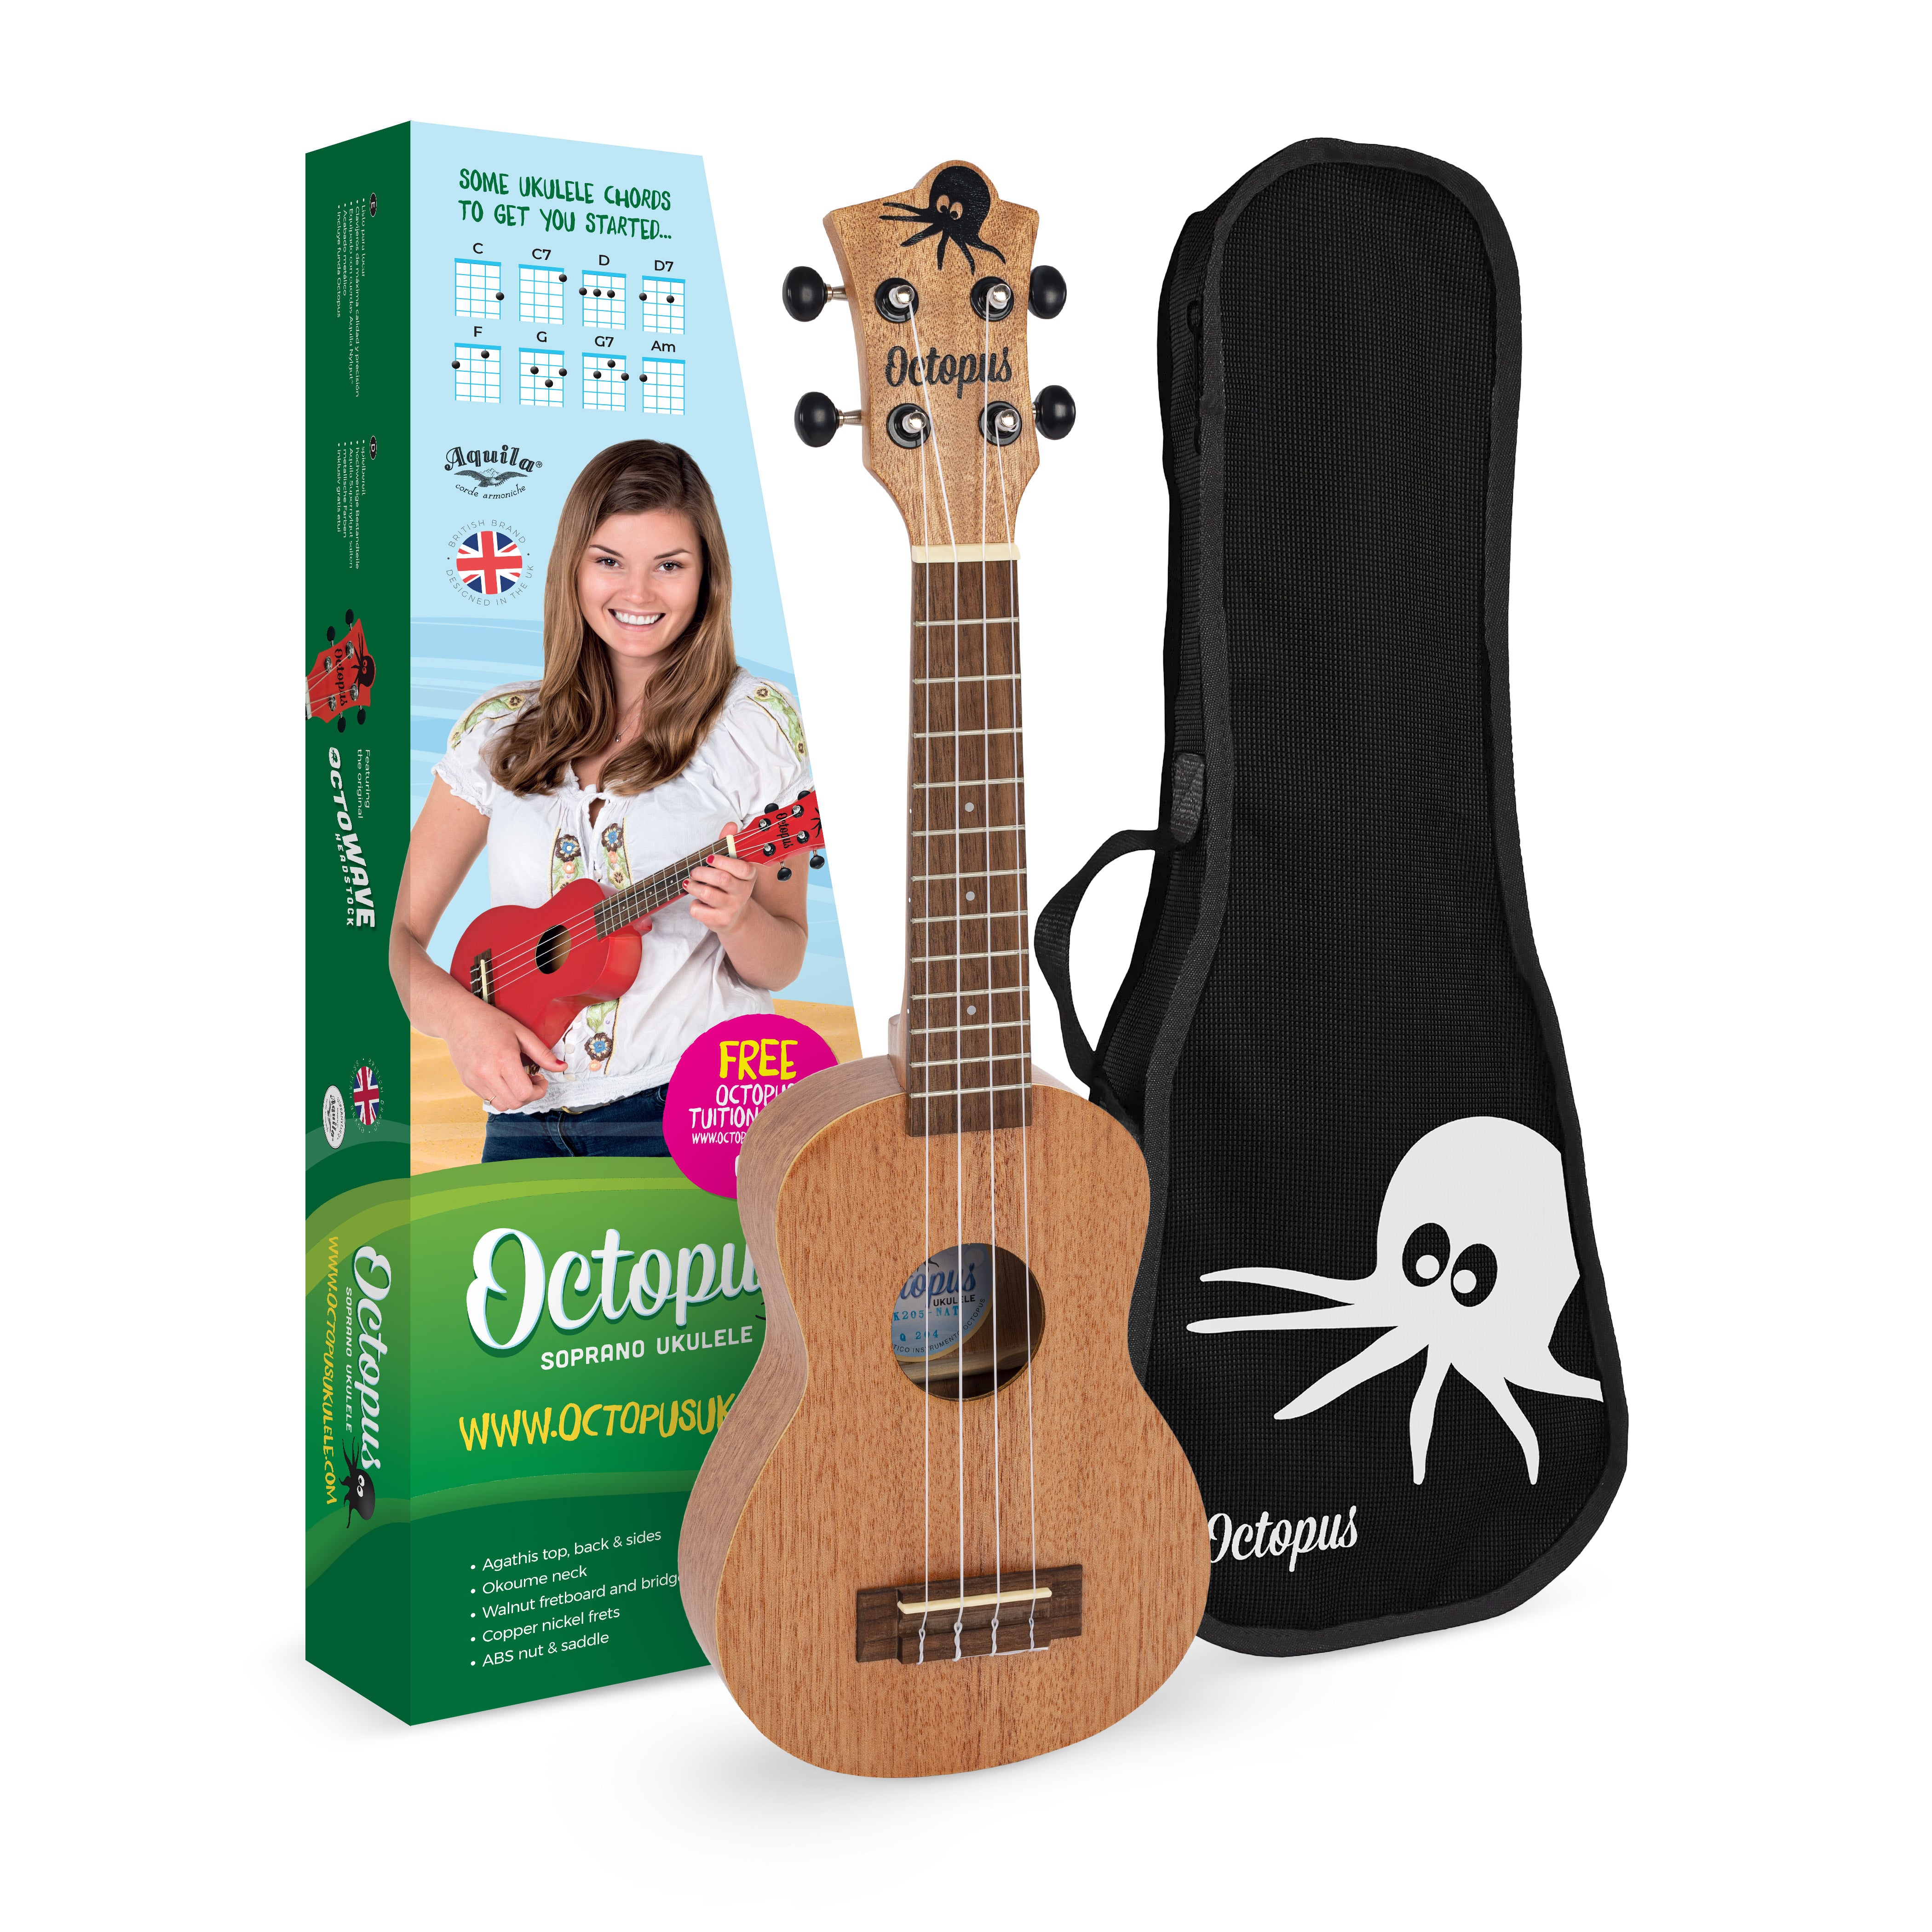 Academy ukulele classroom pack of 24 :: Octopus Ukulele